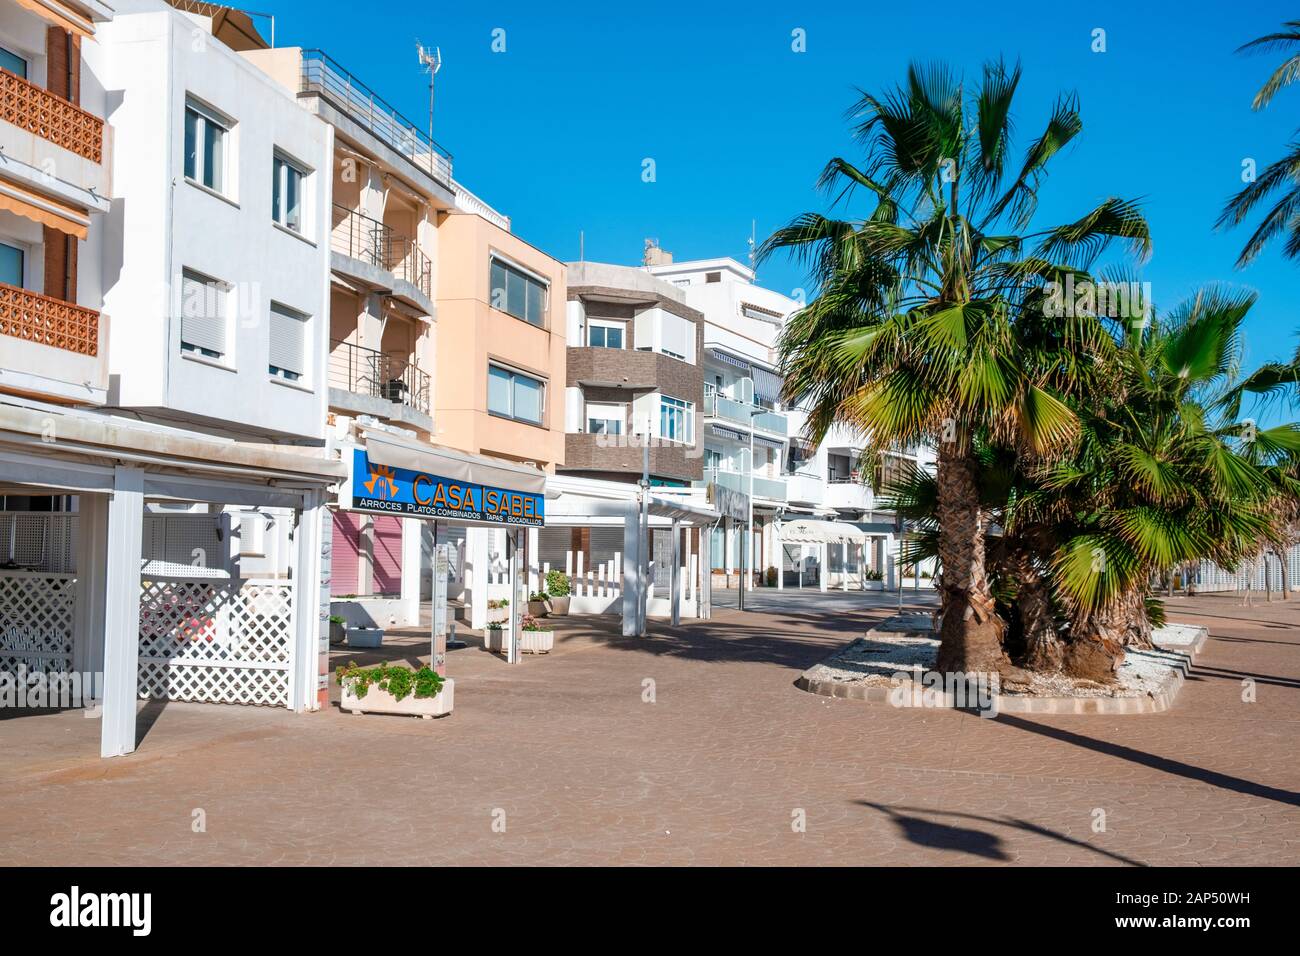 ALCOSSEBRE, SPANIEN - Januar 11, 2020: Ein Blick auf den Passeig de Vista Alegre Promenade, an der Küste von alcossebre an der Costa del Azahar, Spanien, Stockfoto